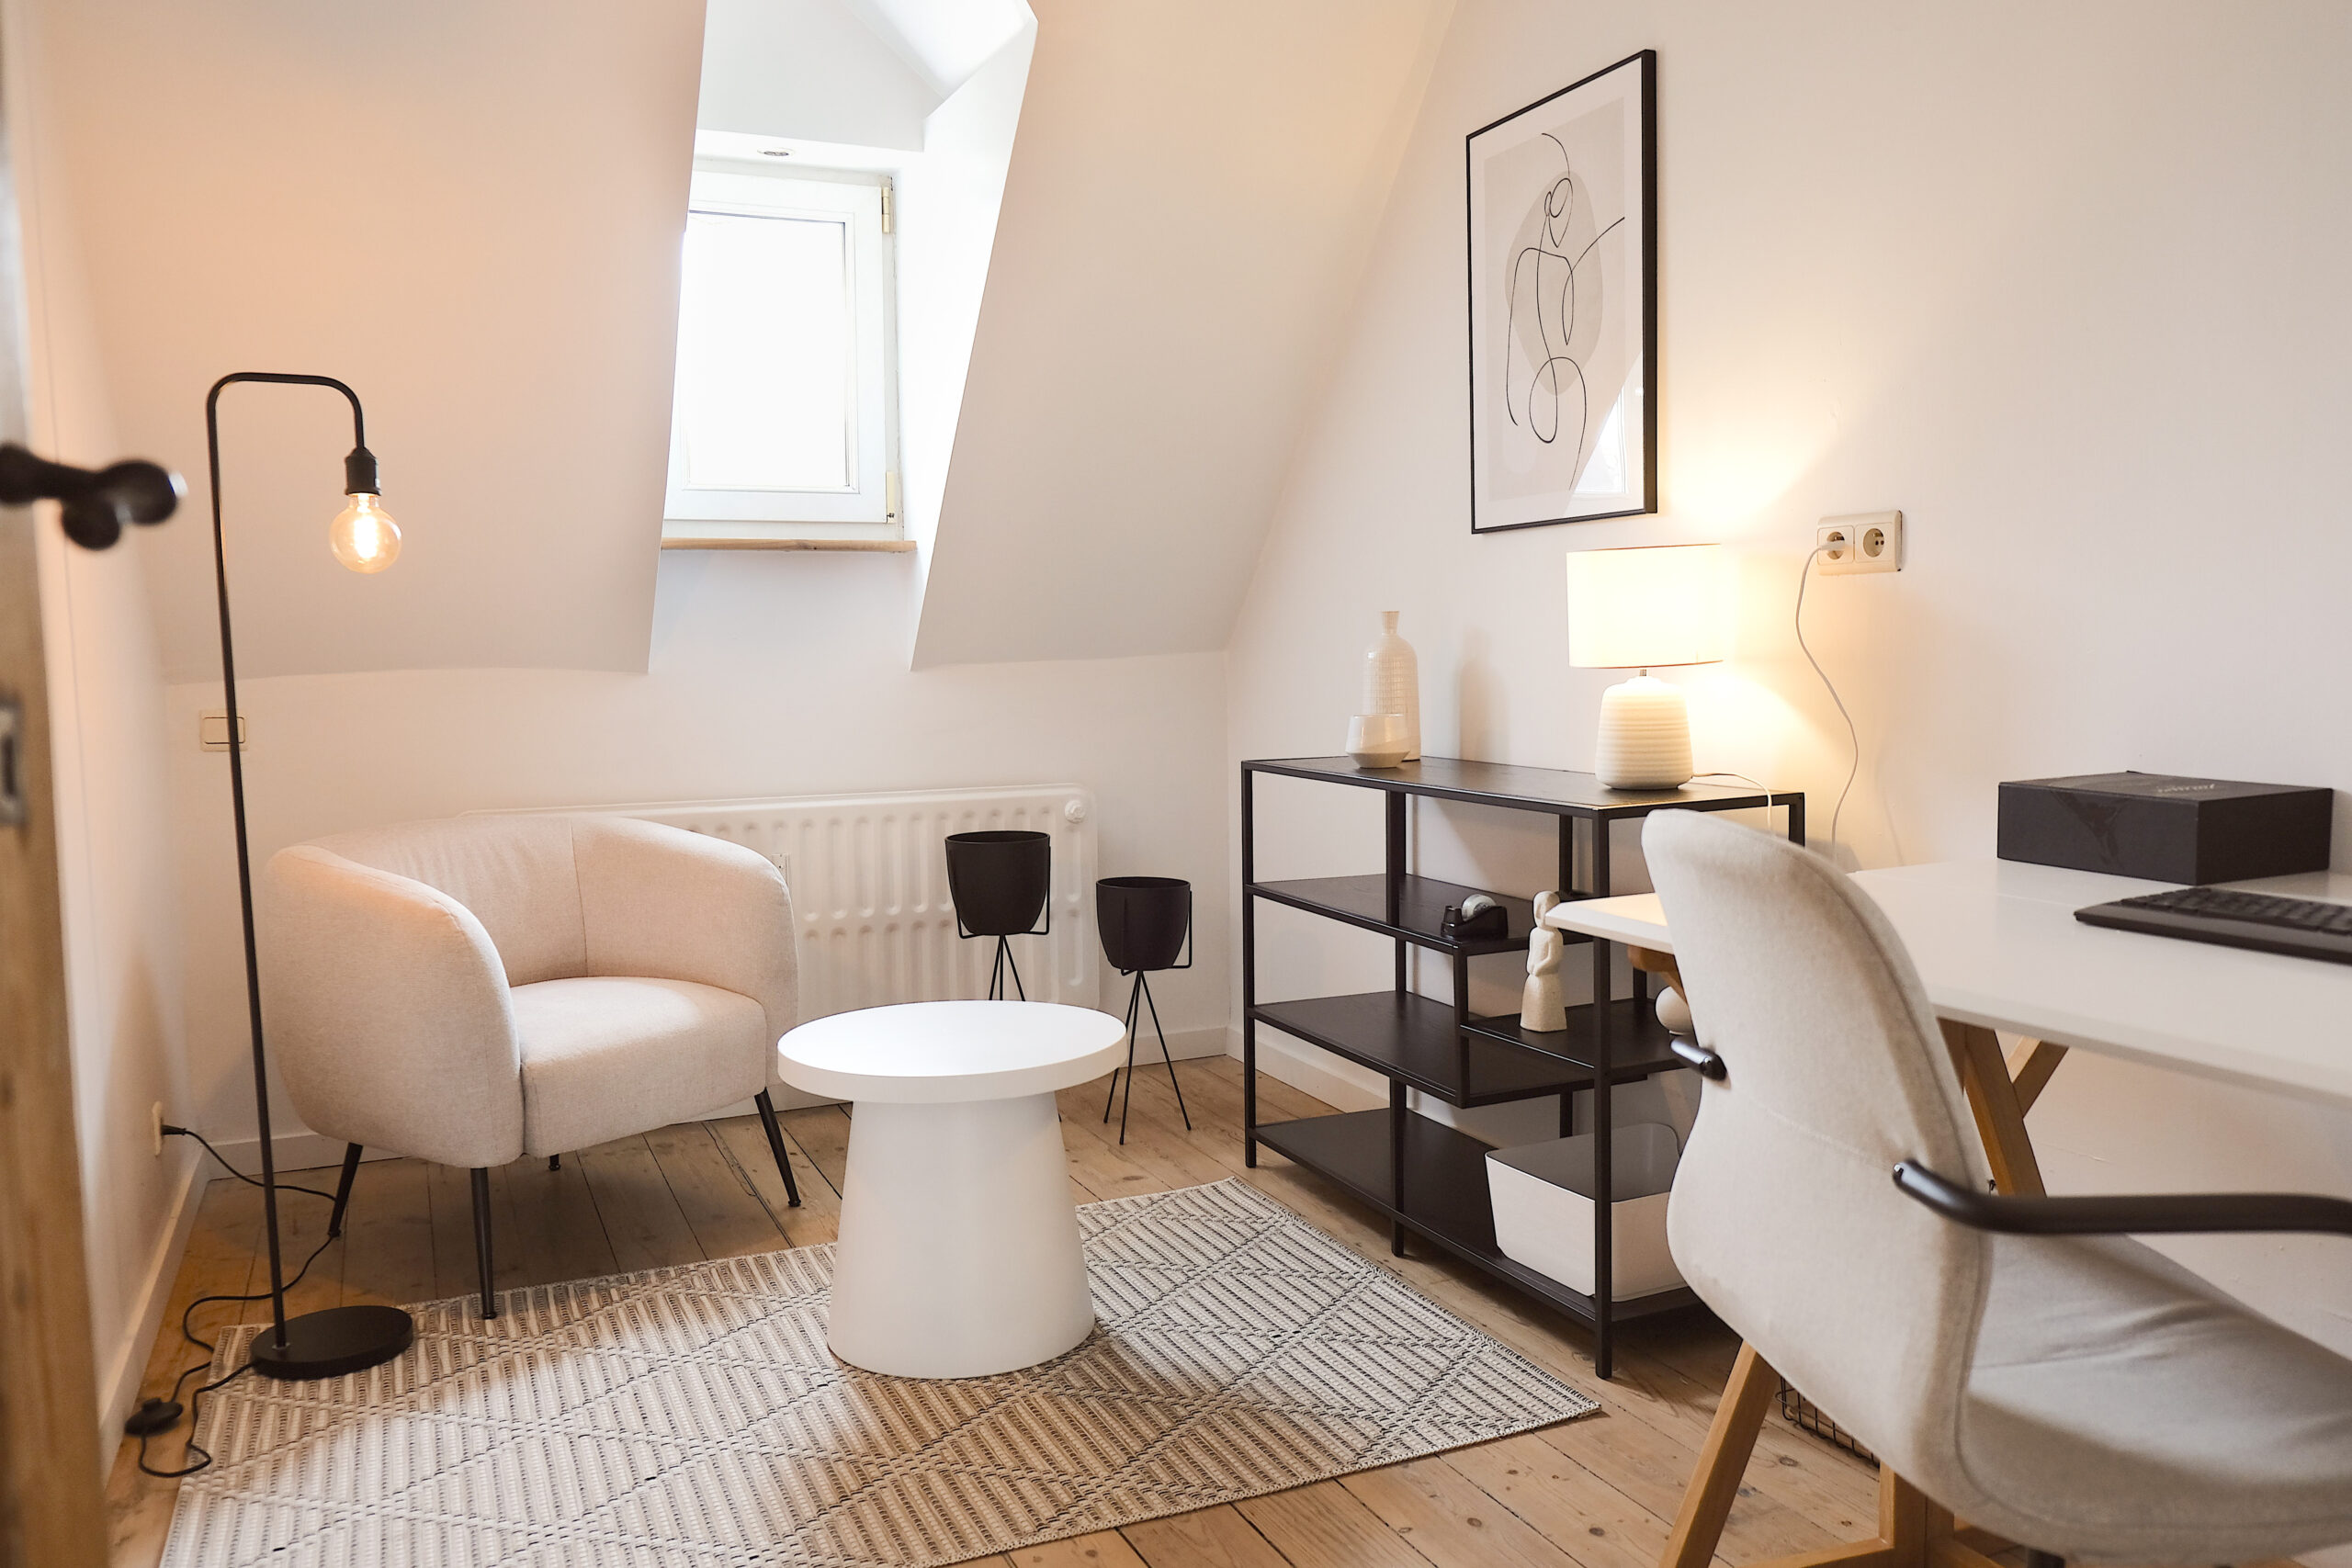 Un nouvel espace “pour partager des bureaux, une cantine et des bons moments” à Saint-Léonard